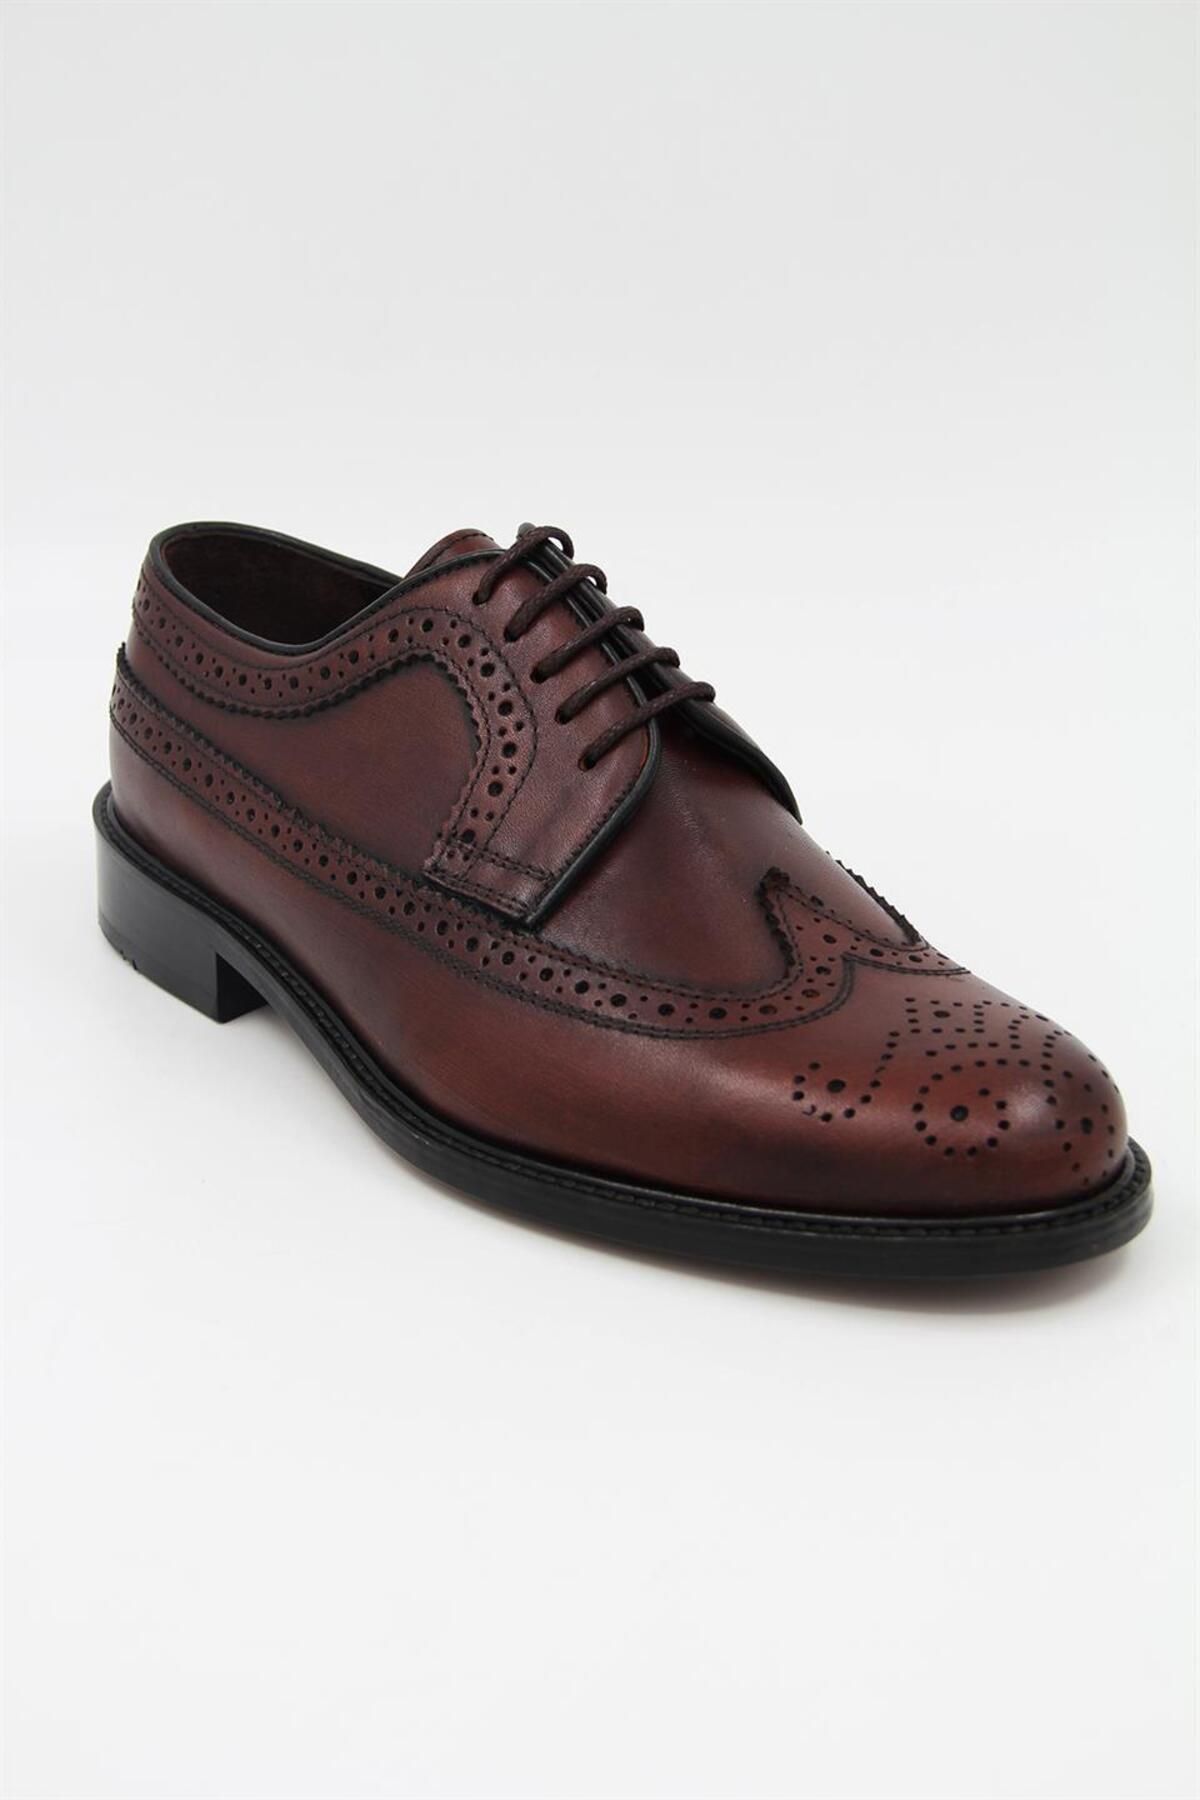 DANACI Danacı 906 Erkek Klasik Ayakkabı - Kahverengi